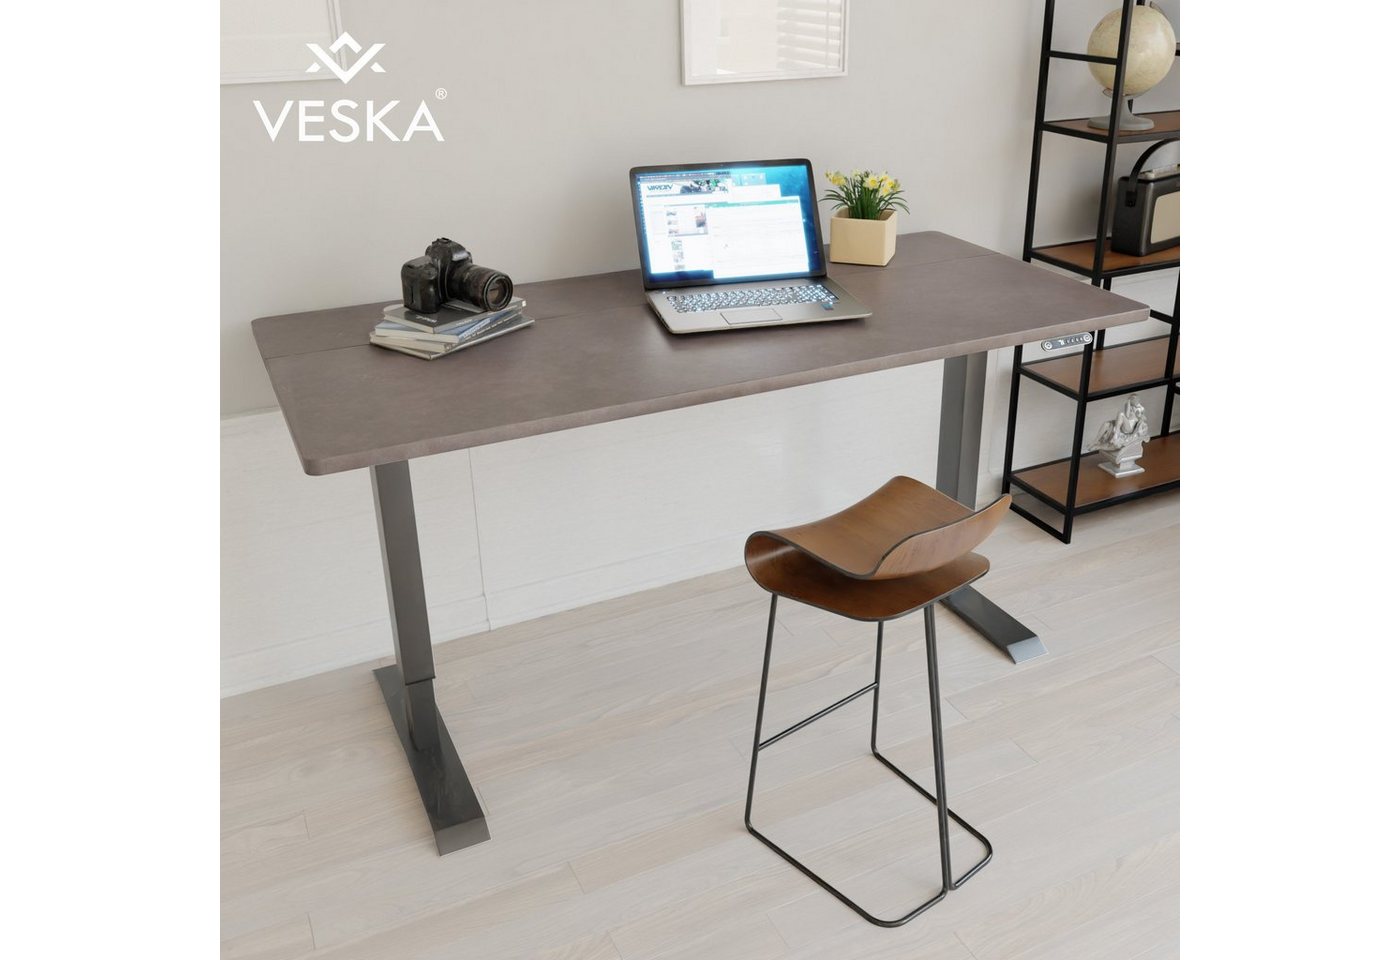 VESKA Schreibtisch Höhenverstellbar 140 x 70 cm - Bürotisch Elektrisch mit Touchscreen - Sitz- & Stehpult Home Office von VESKA